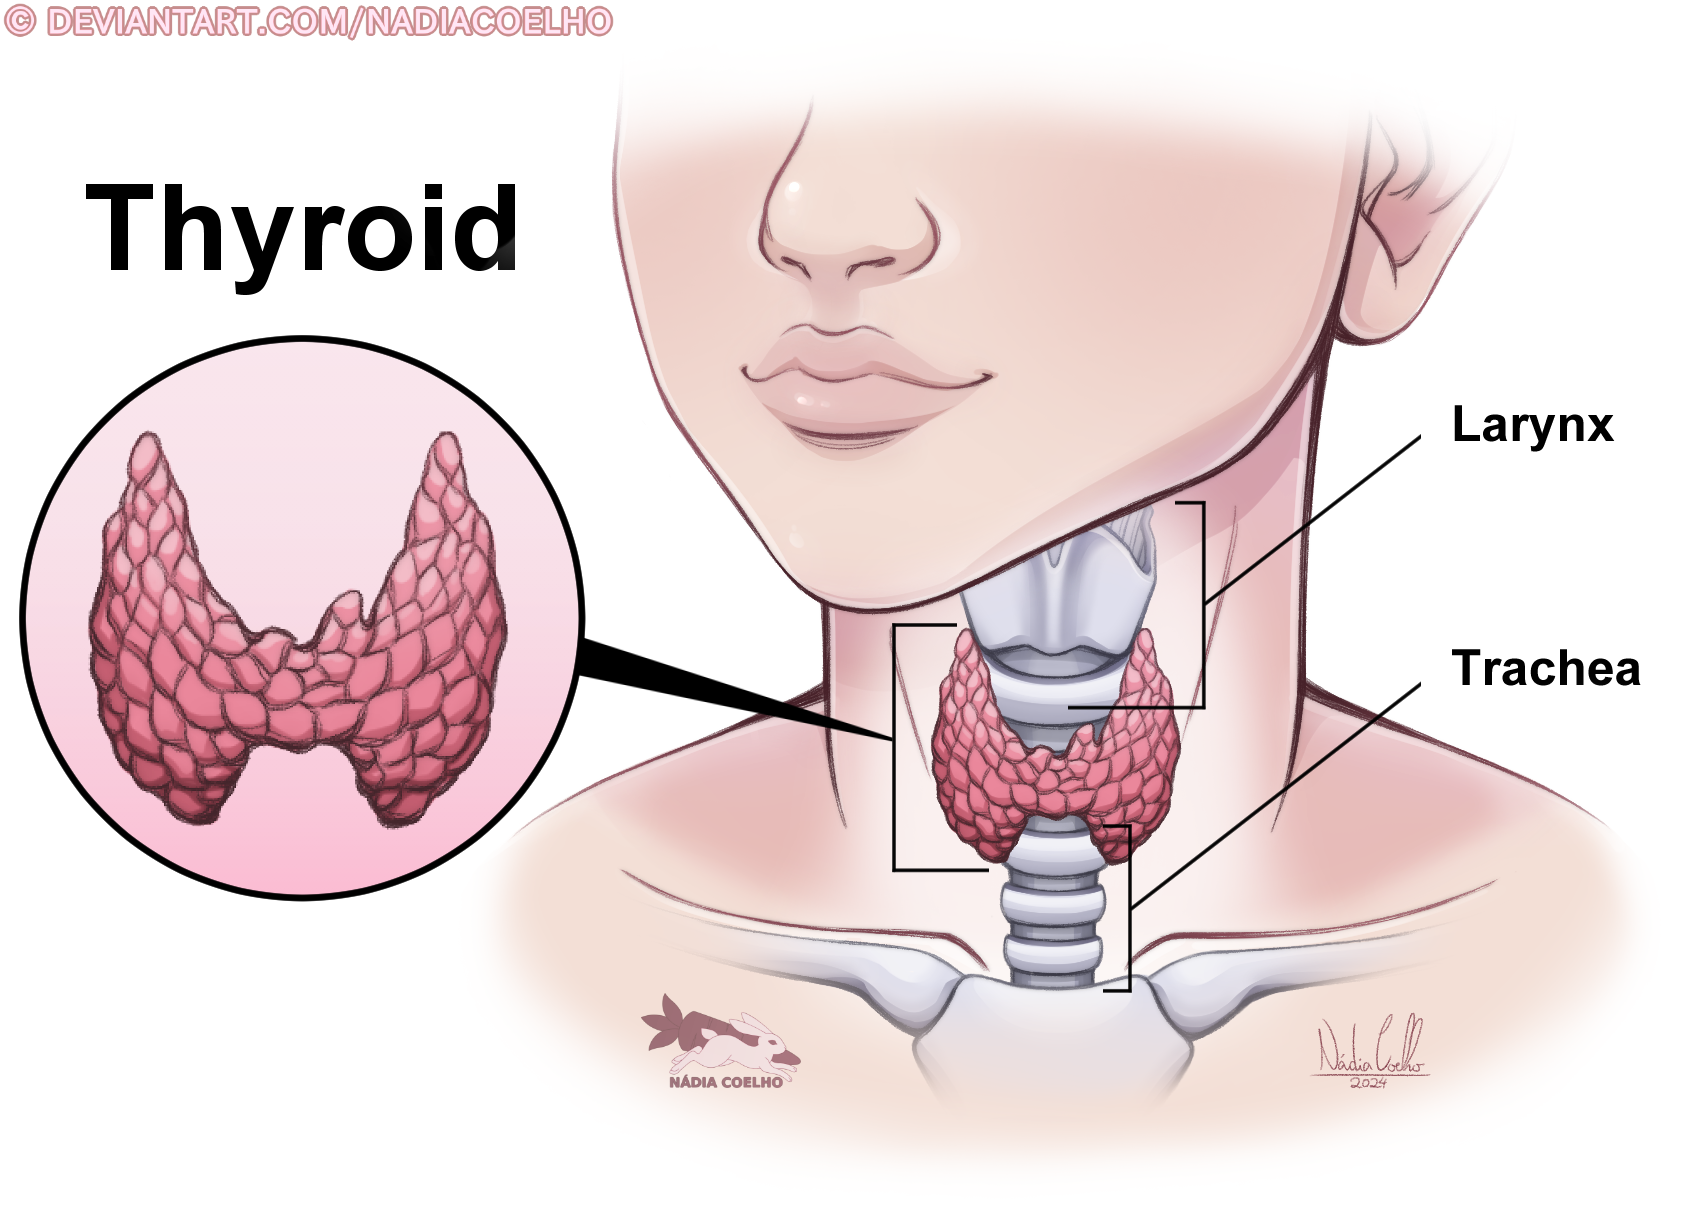 anatomy, thyroidanatomy, thyroid_anatomy, thyroid, thyroidgland, thyroid_gland